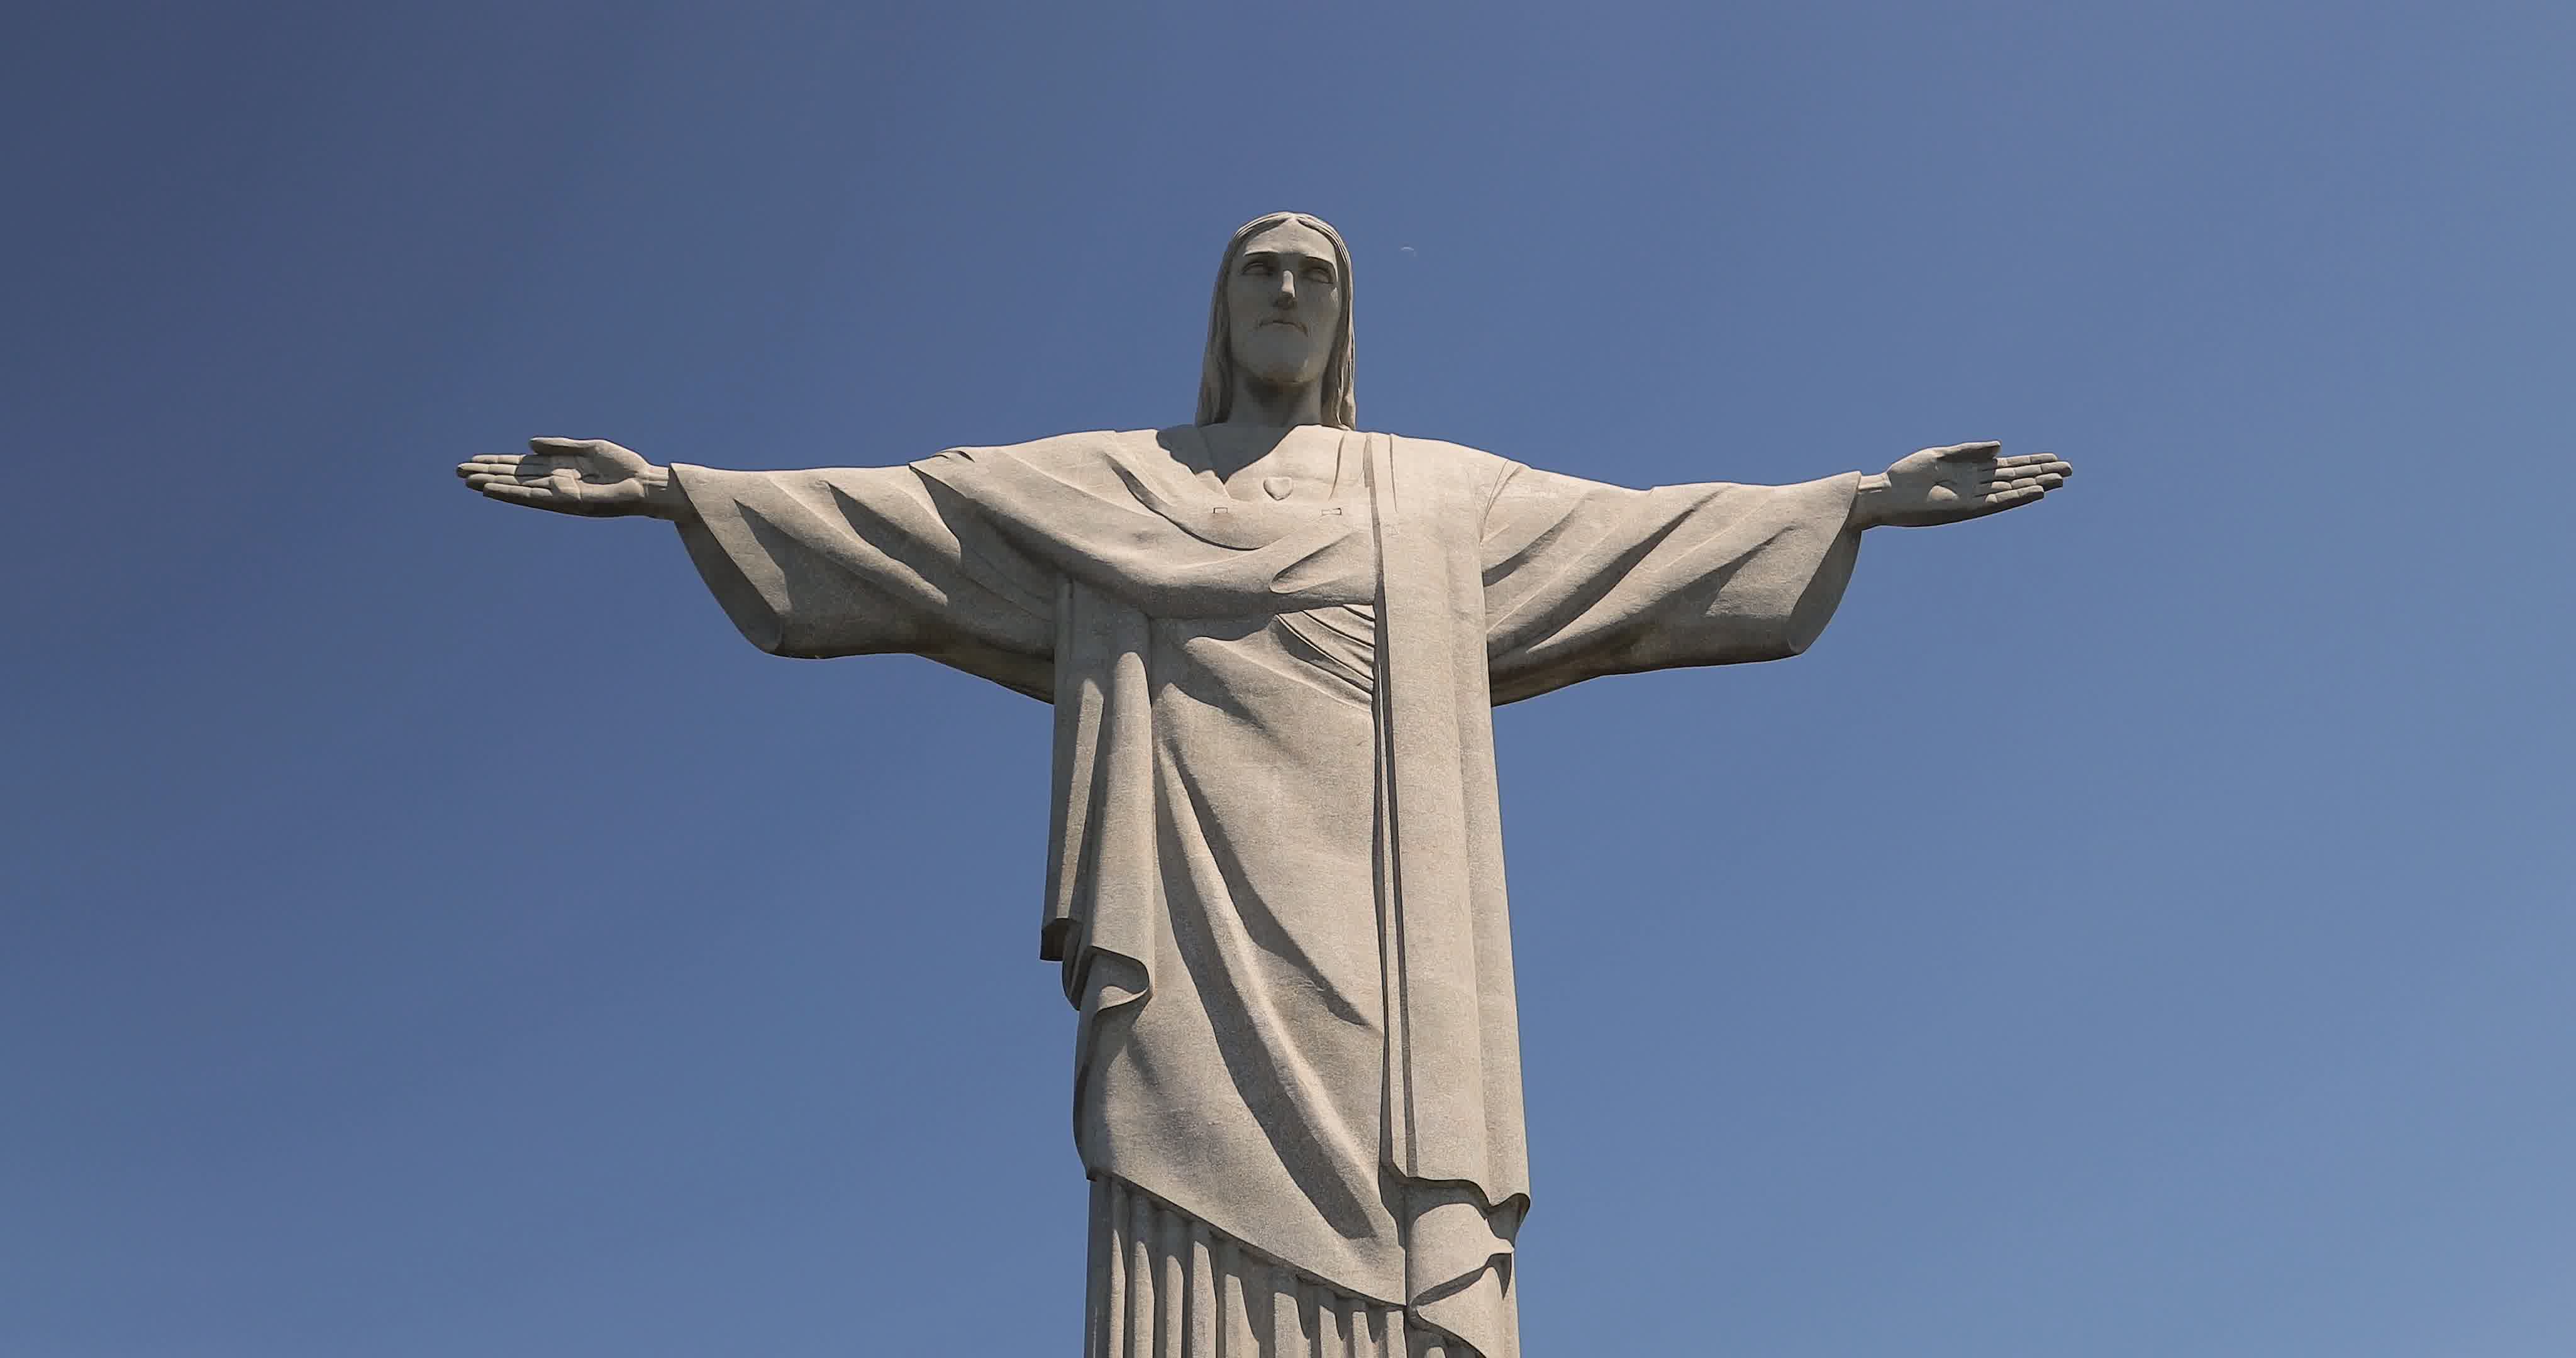 图片素材 : 纪念碑, 雕像, 地标, 人类, 里约热内卢, 纪念馆, 巴西, 克里斯托, cristo redentor 2736x3648 ...